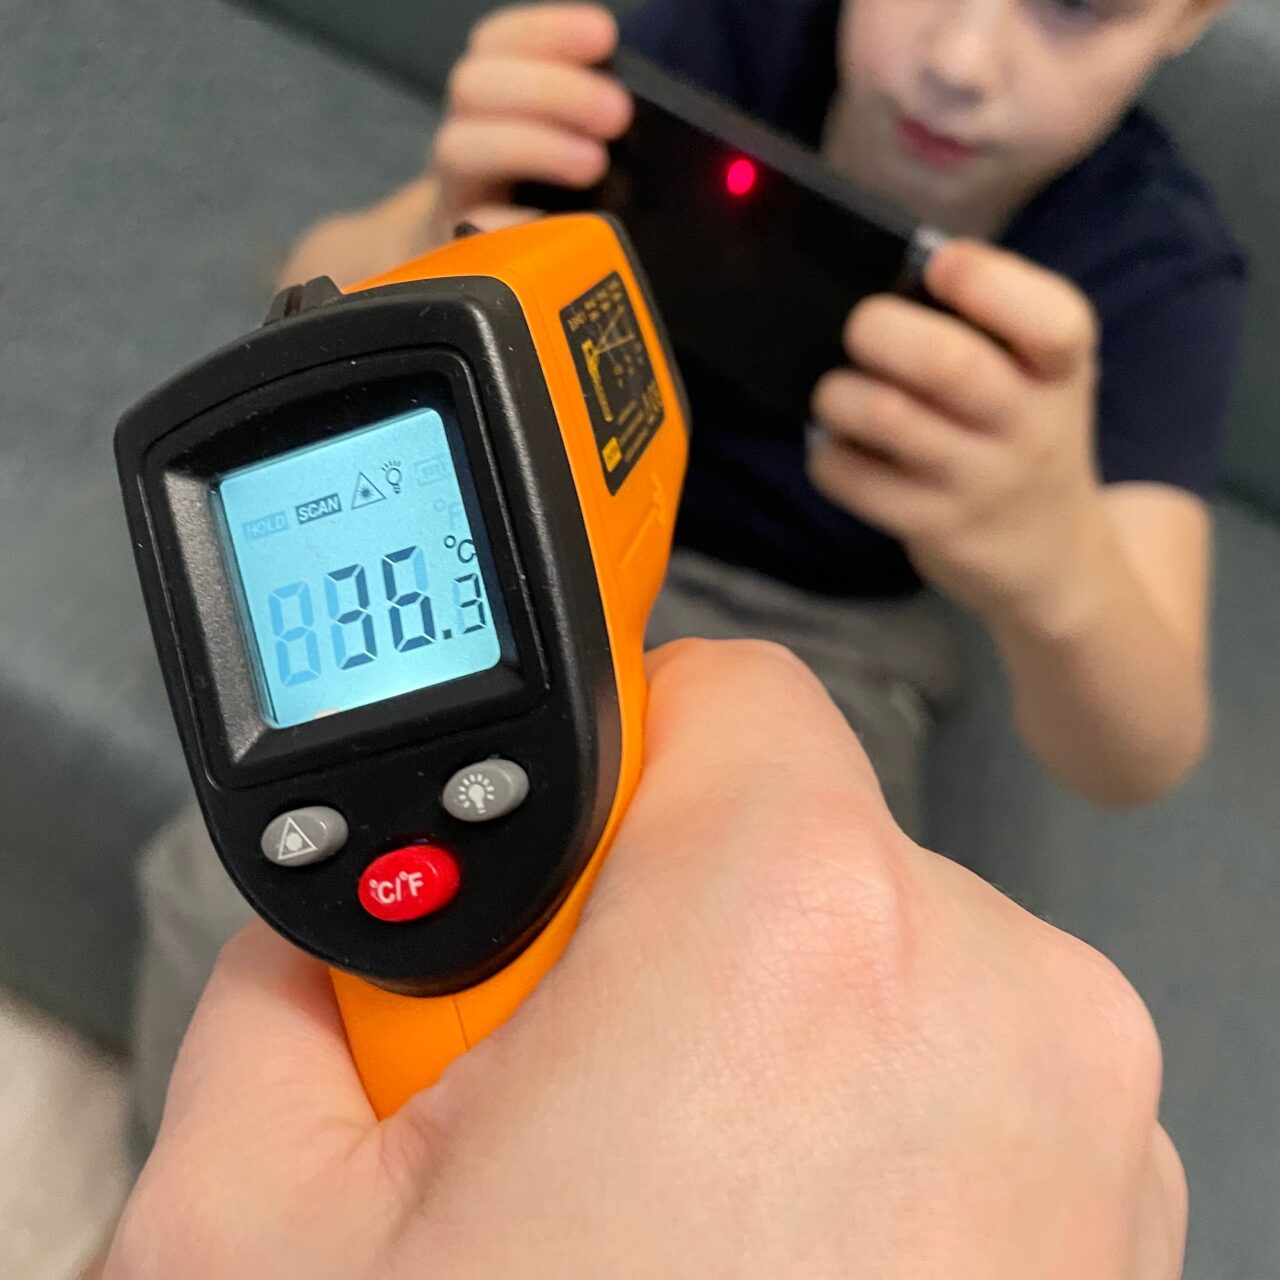 Dłoń trzymająca termometr podczerwieni pokazujący temperaturę 83,3°C, w tle rozmyty wizerunek dziecka patrzącego na smartfon.